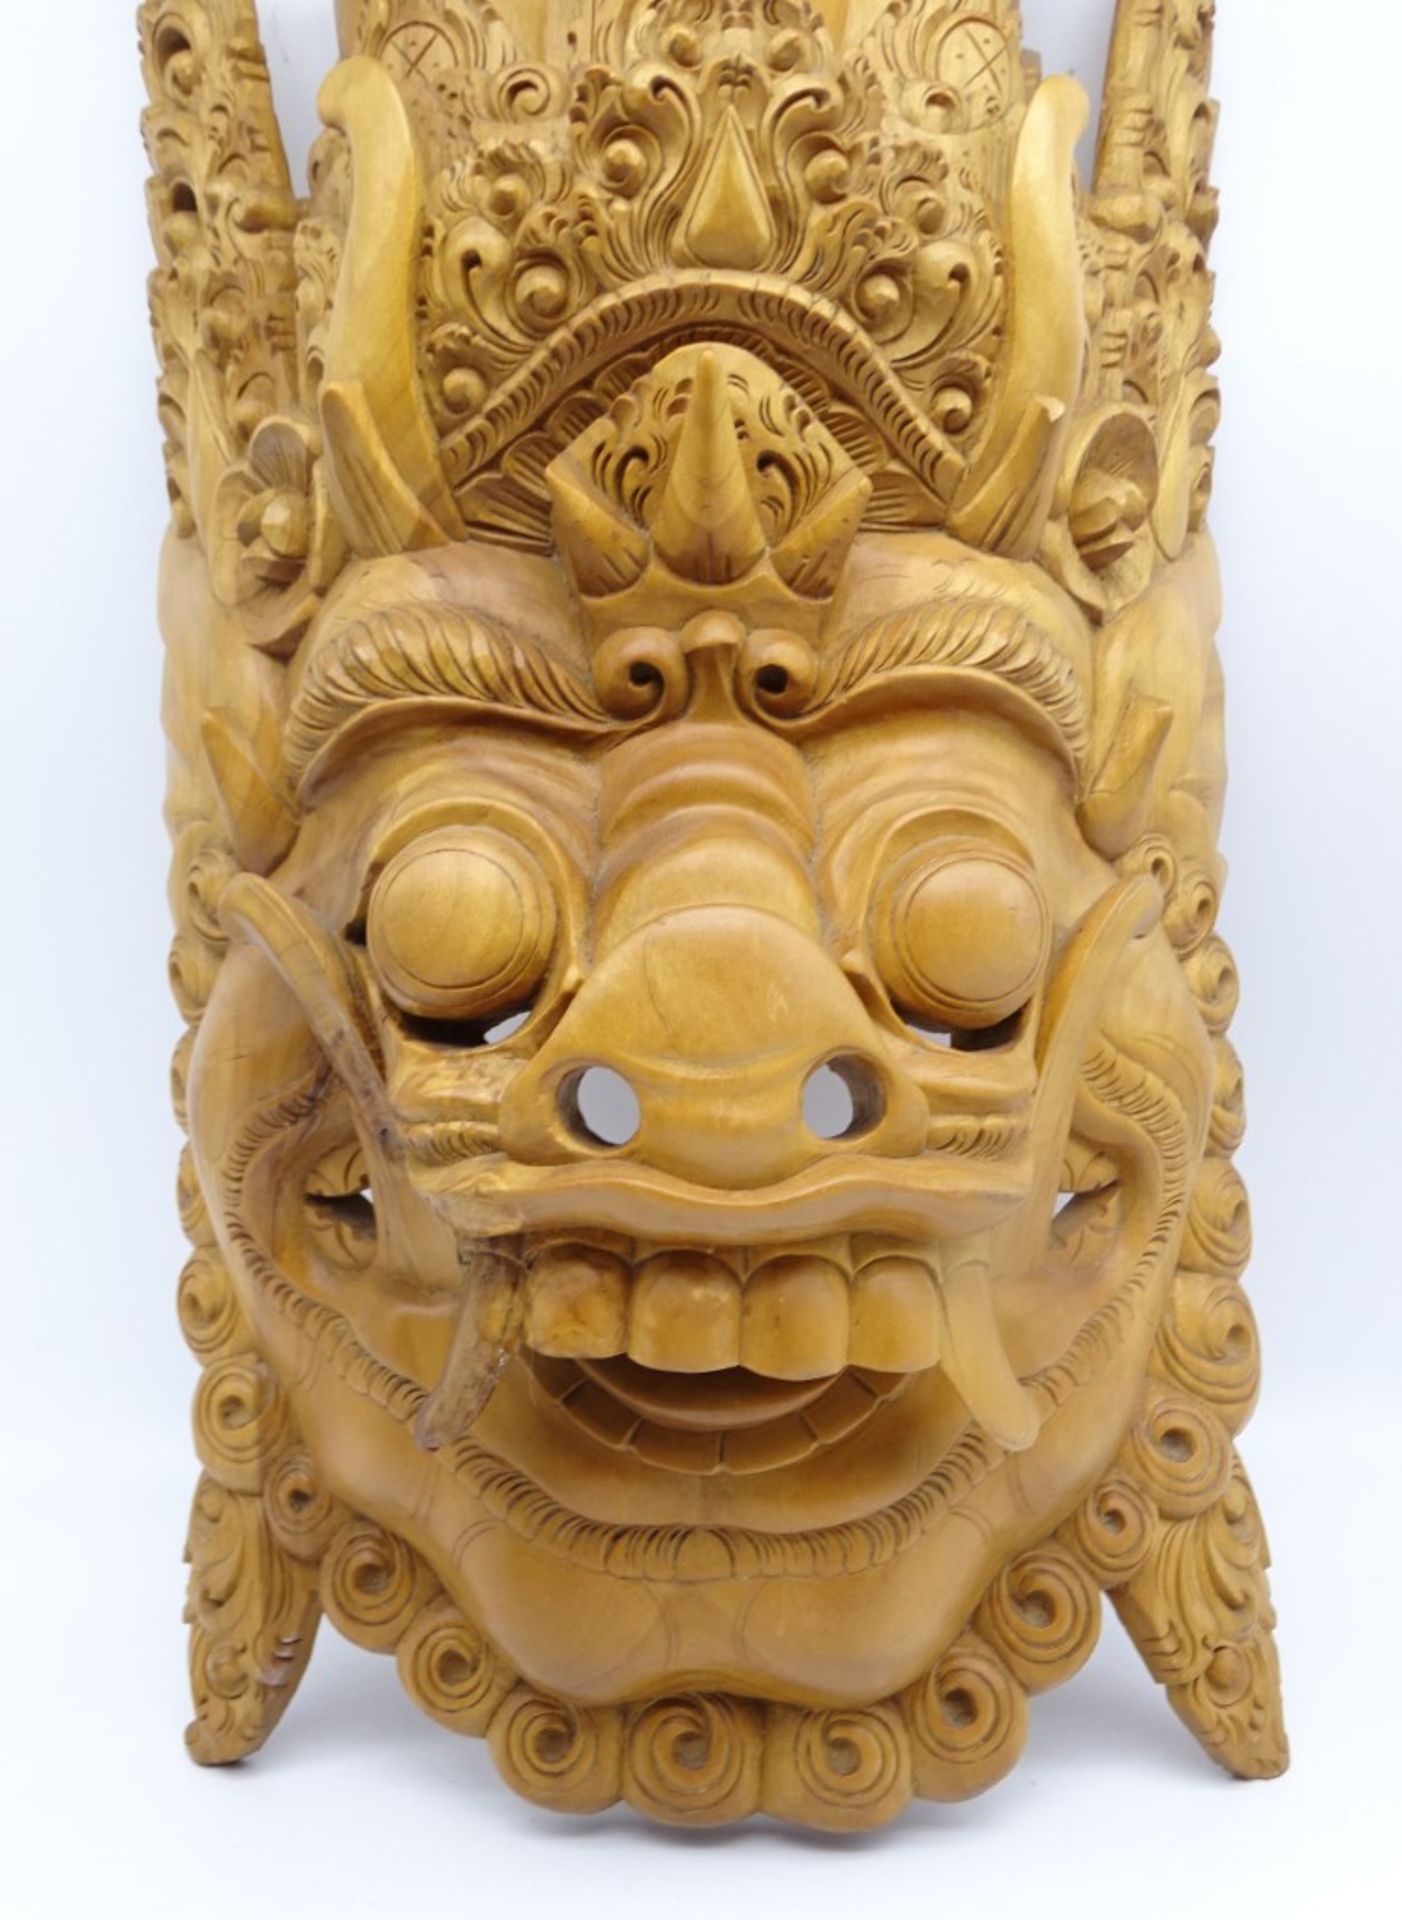 Balinesische Barong-Maske aus Holz, 56 x 26,5 cm, im Mundwinkel rechte Seite Riss, leicht reinigung - Bild 2 aus 5